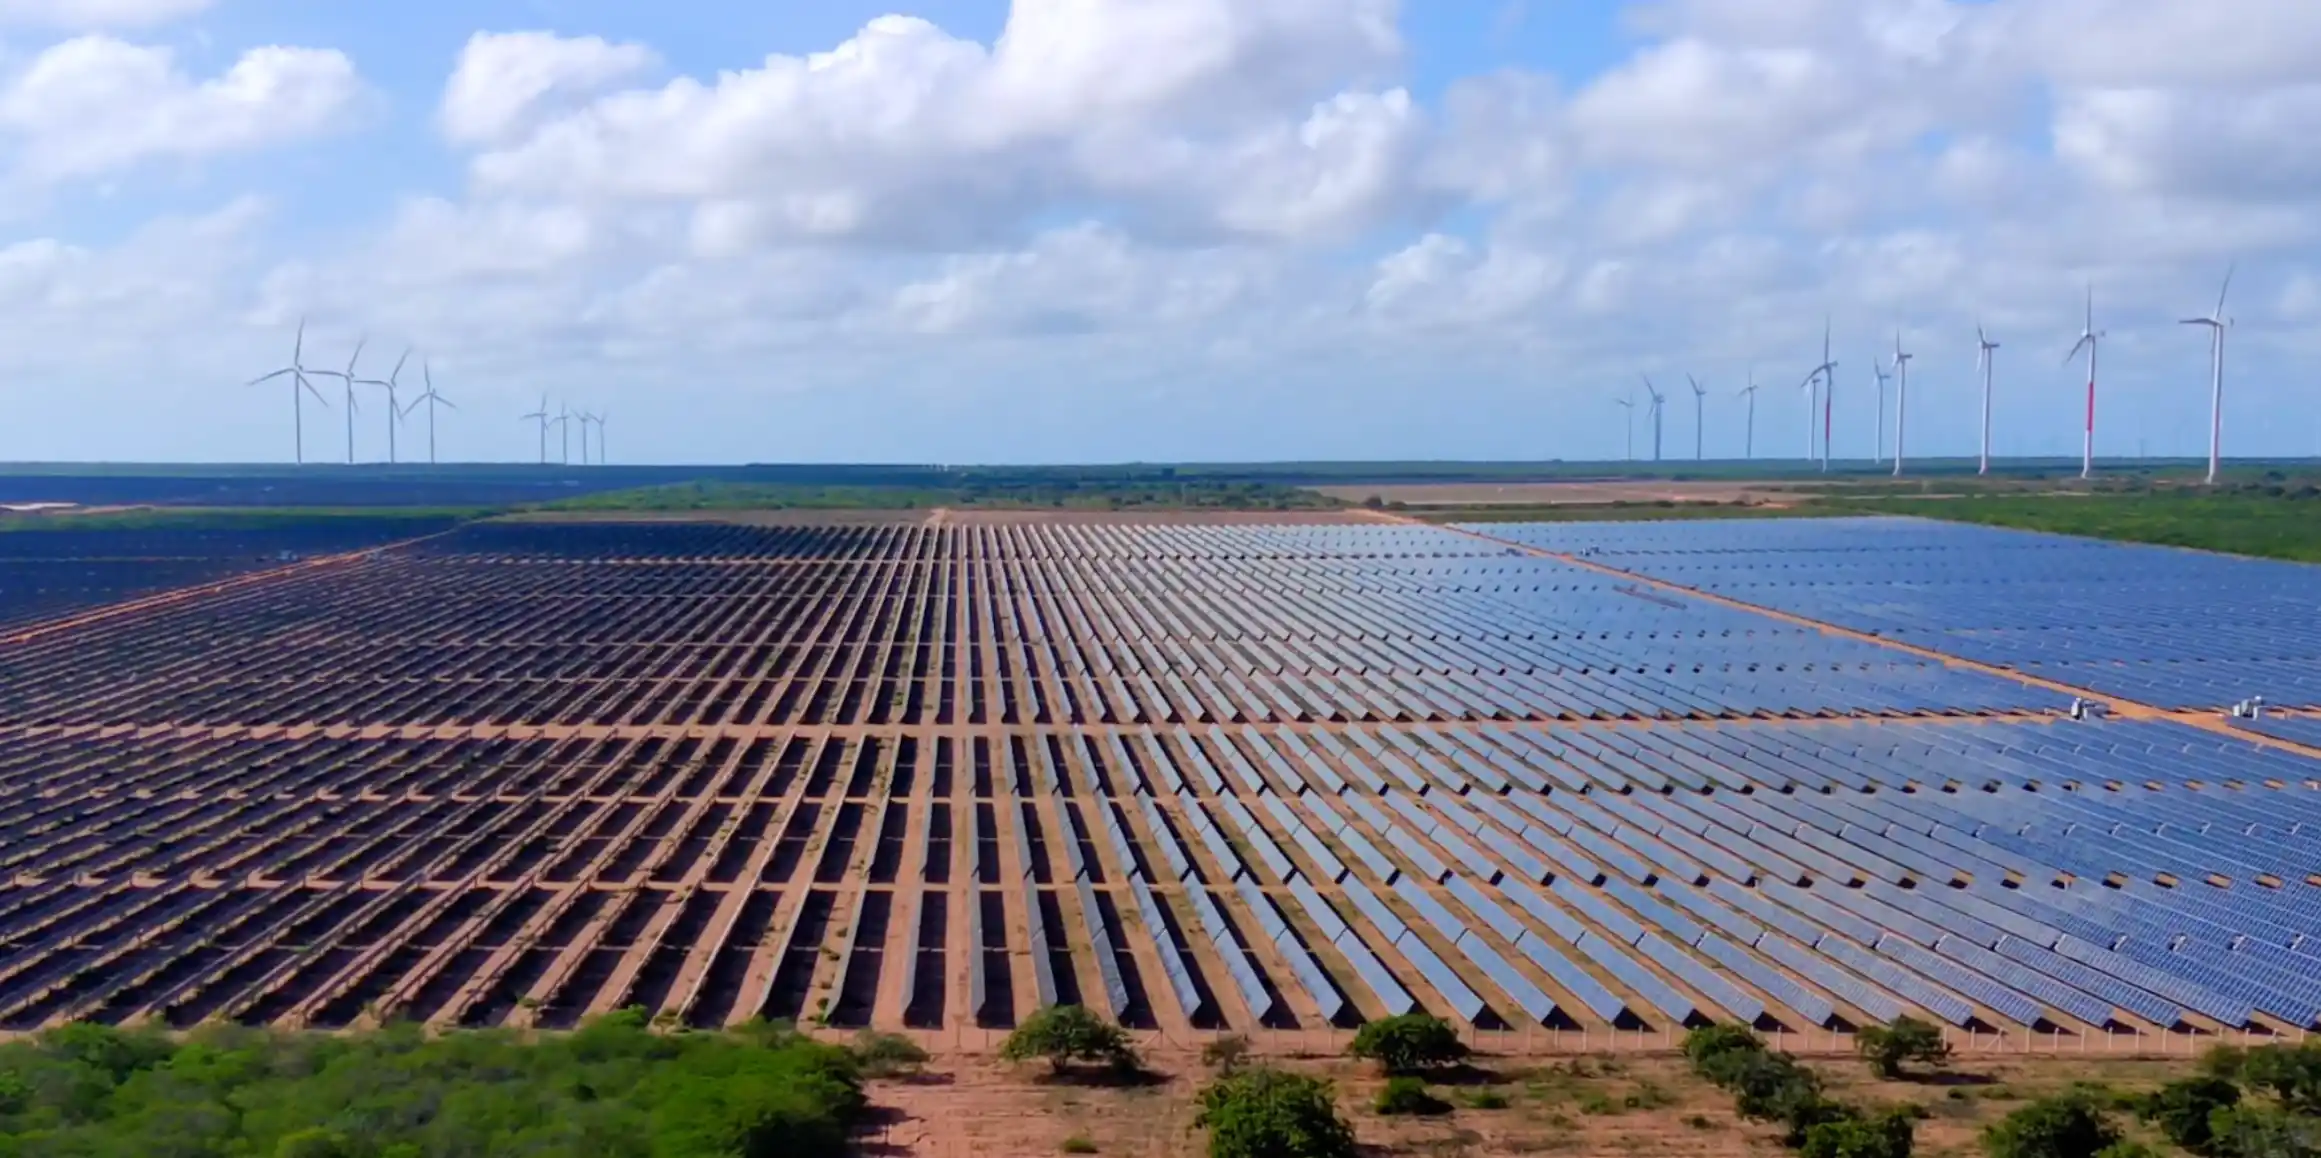  Confira na epbr o ranking das 10 maiores usinas solares fotovoltaicas do Brasil. Na imagem: Usina solar fotovoltaica Serra do Mel da Voltalia, com turbinas eólicas ao fundo (Foto Divulgação)